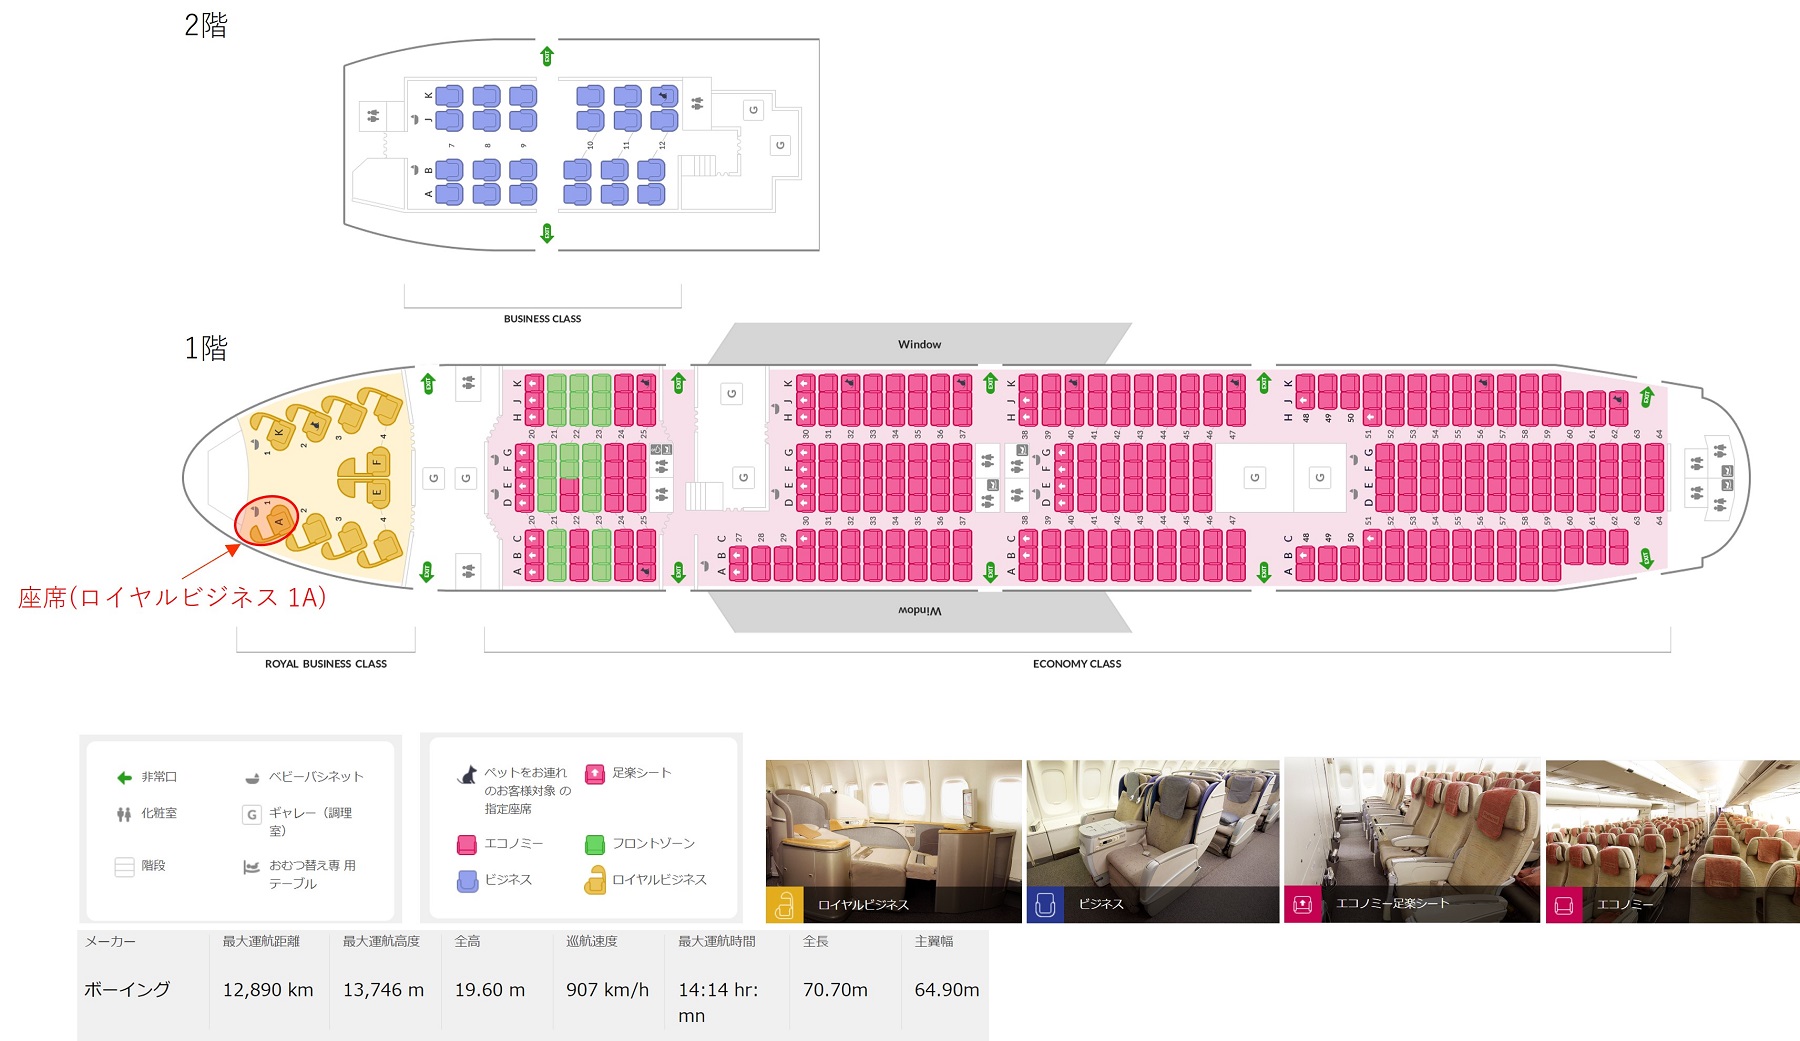 アシアナ航空B747-400型機の座席表と自席の位置